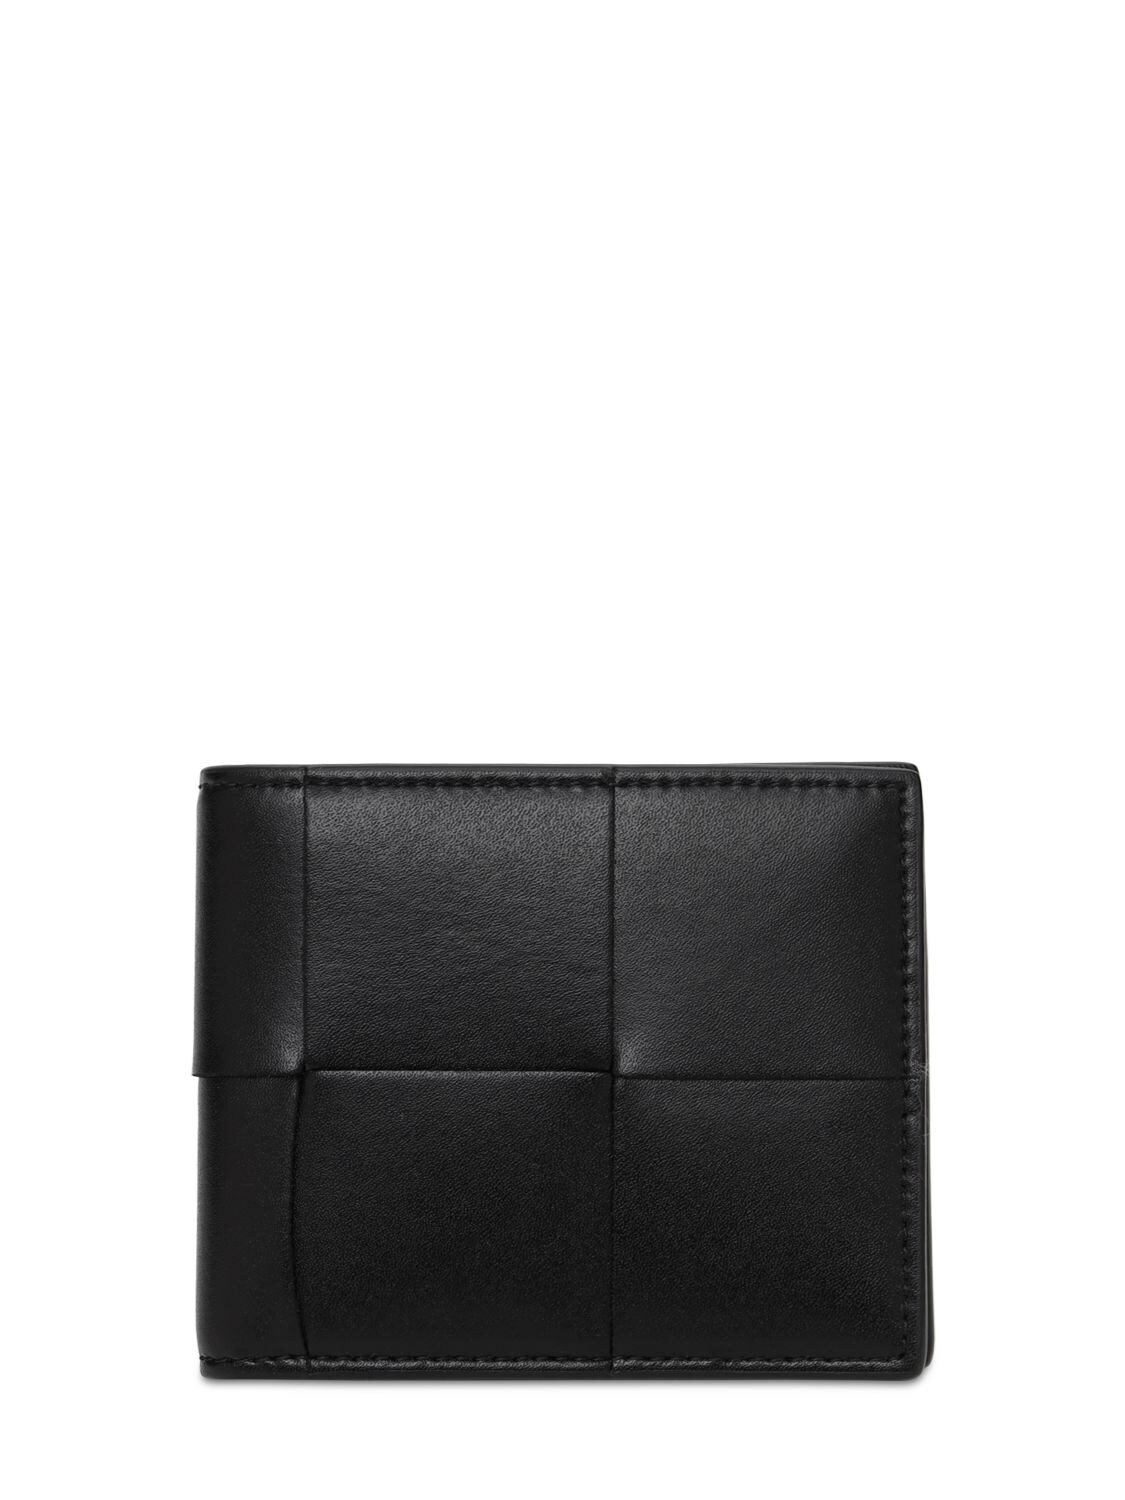 Maxi Intreccio Leather Billfold Wallet